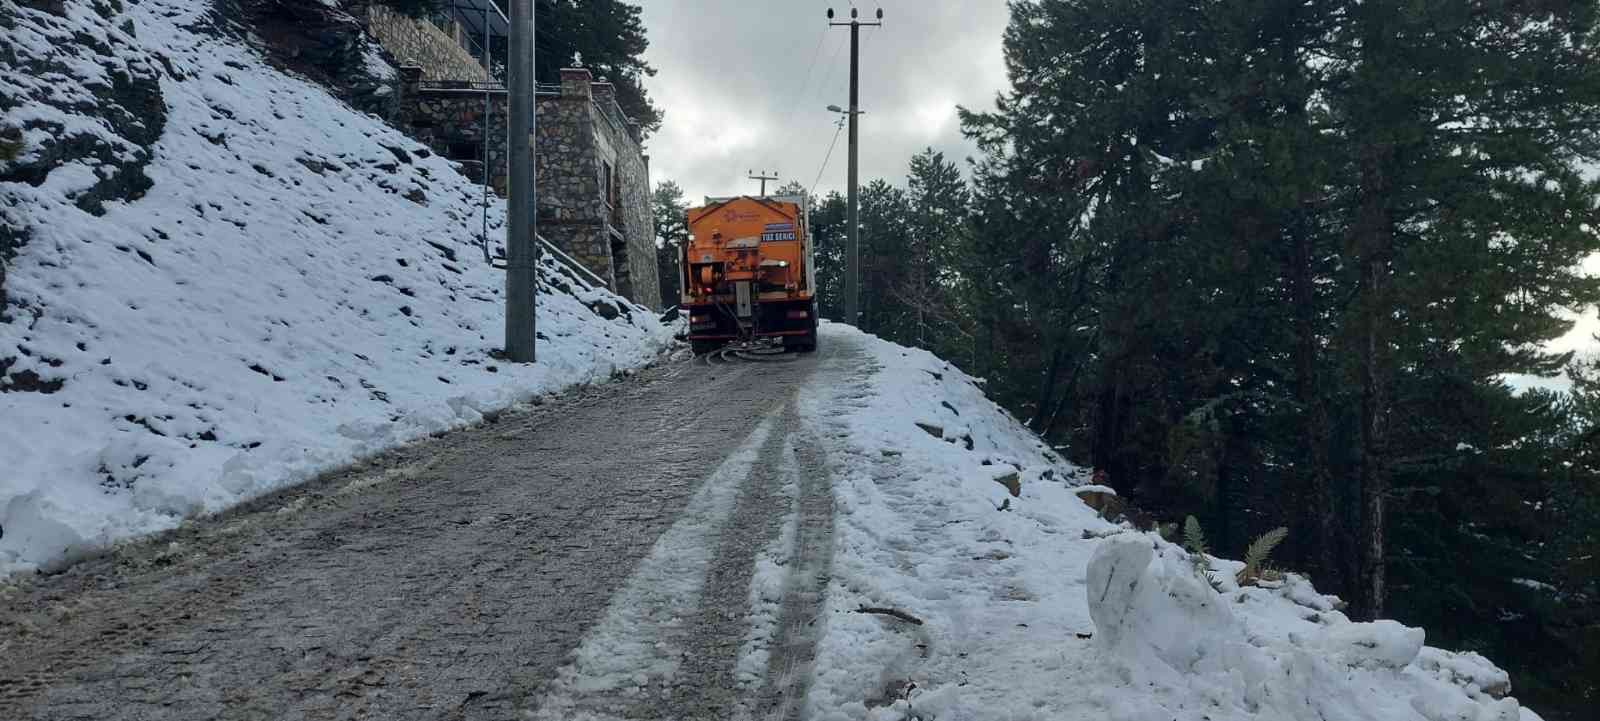 Büyükşehir ekiplerinin karla mücadele çalışmaları sürüyor